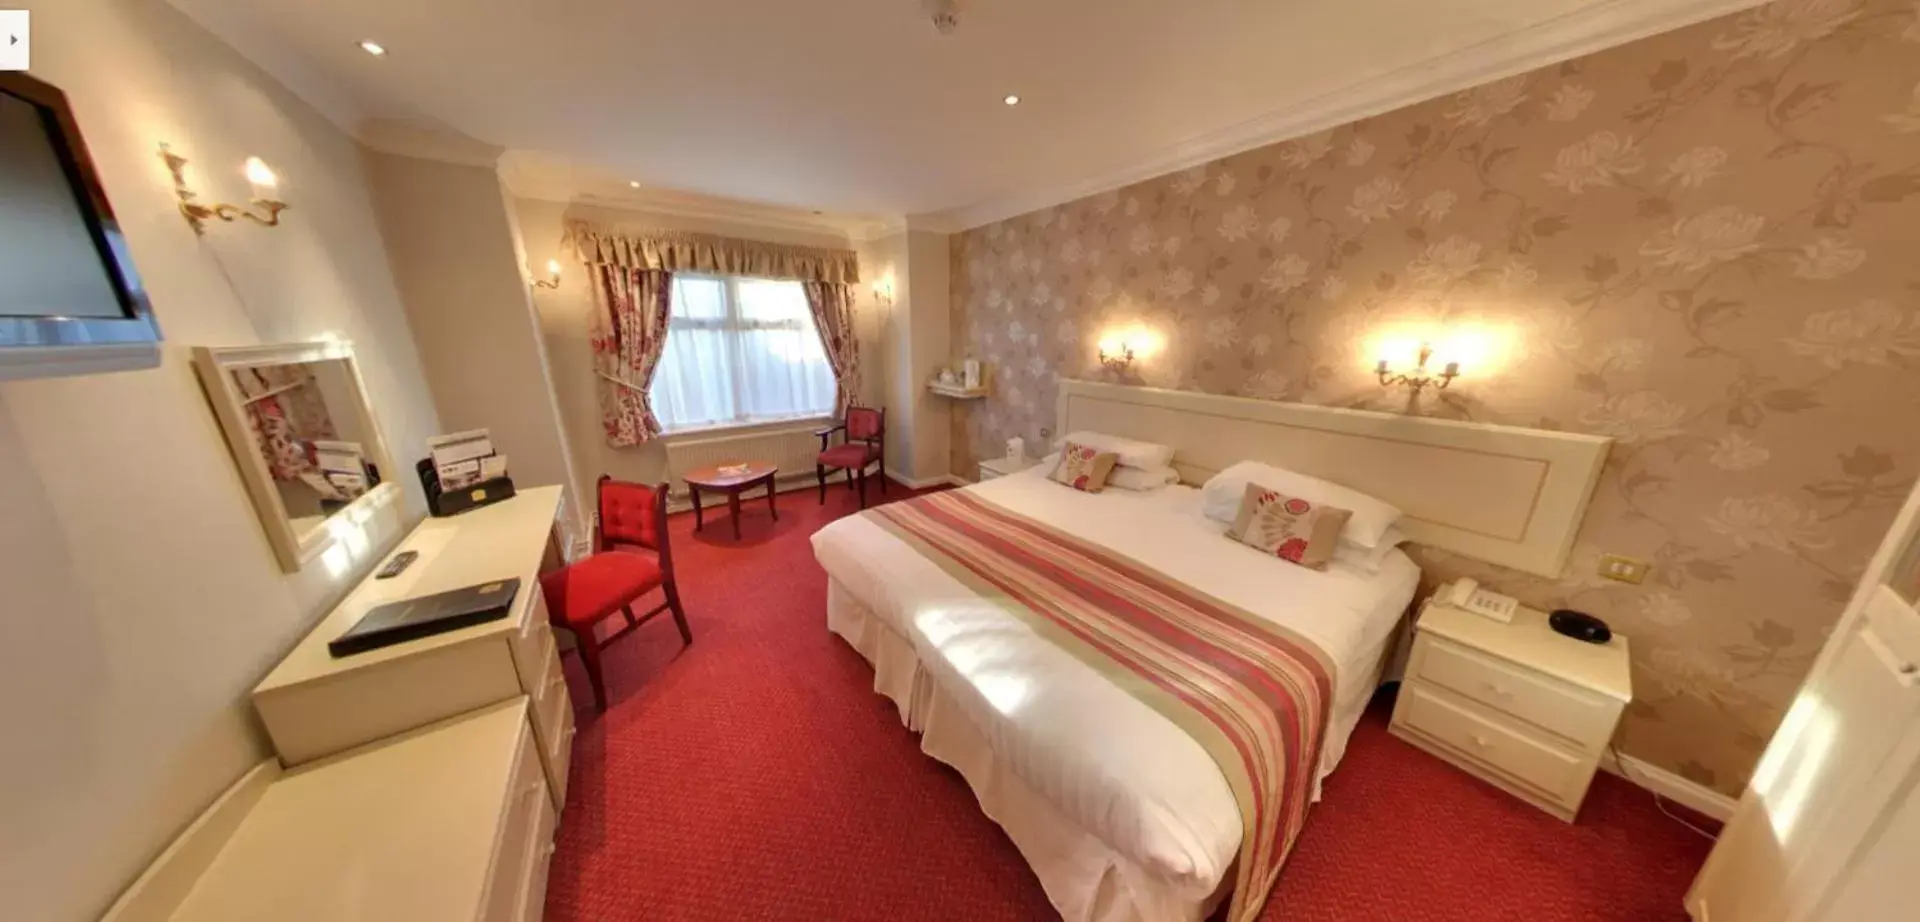 Bedroom in Consort Hotel